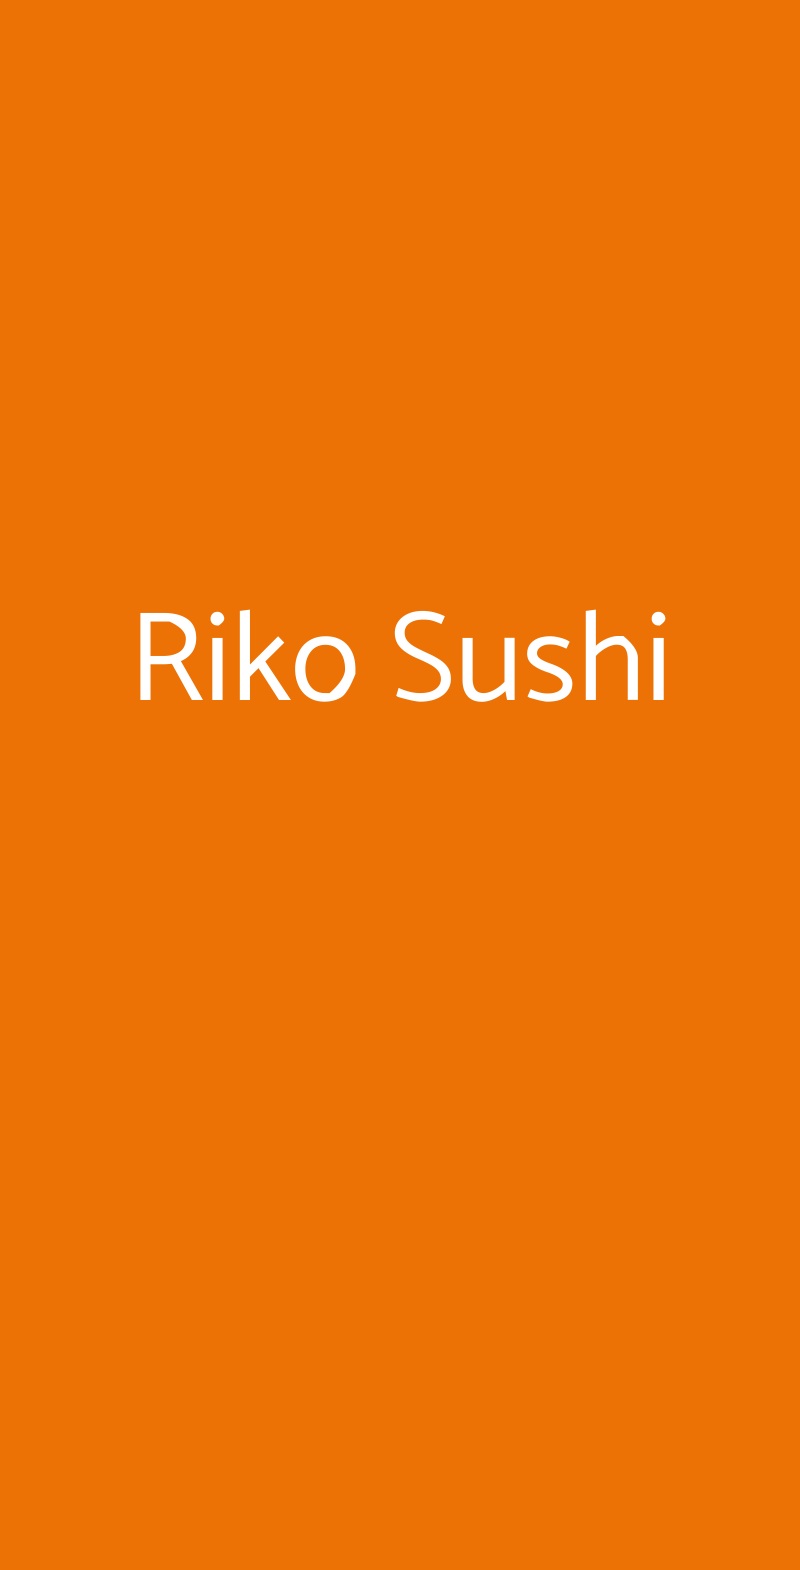 Riko Sushi Collegno menù 1 pagina